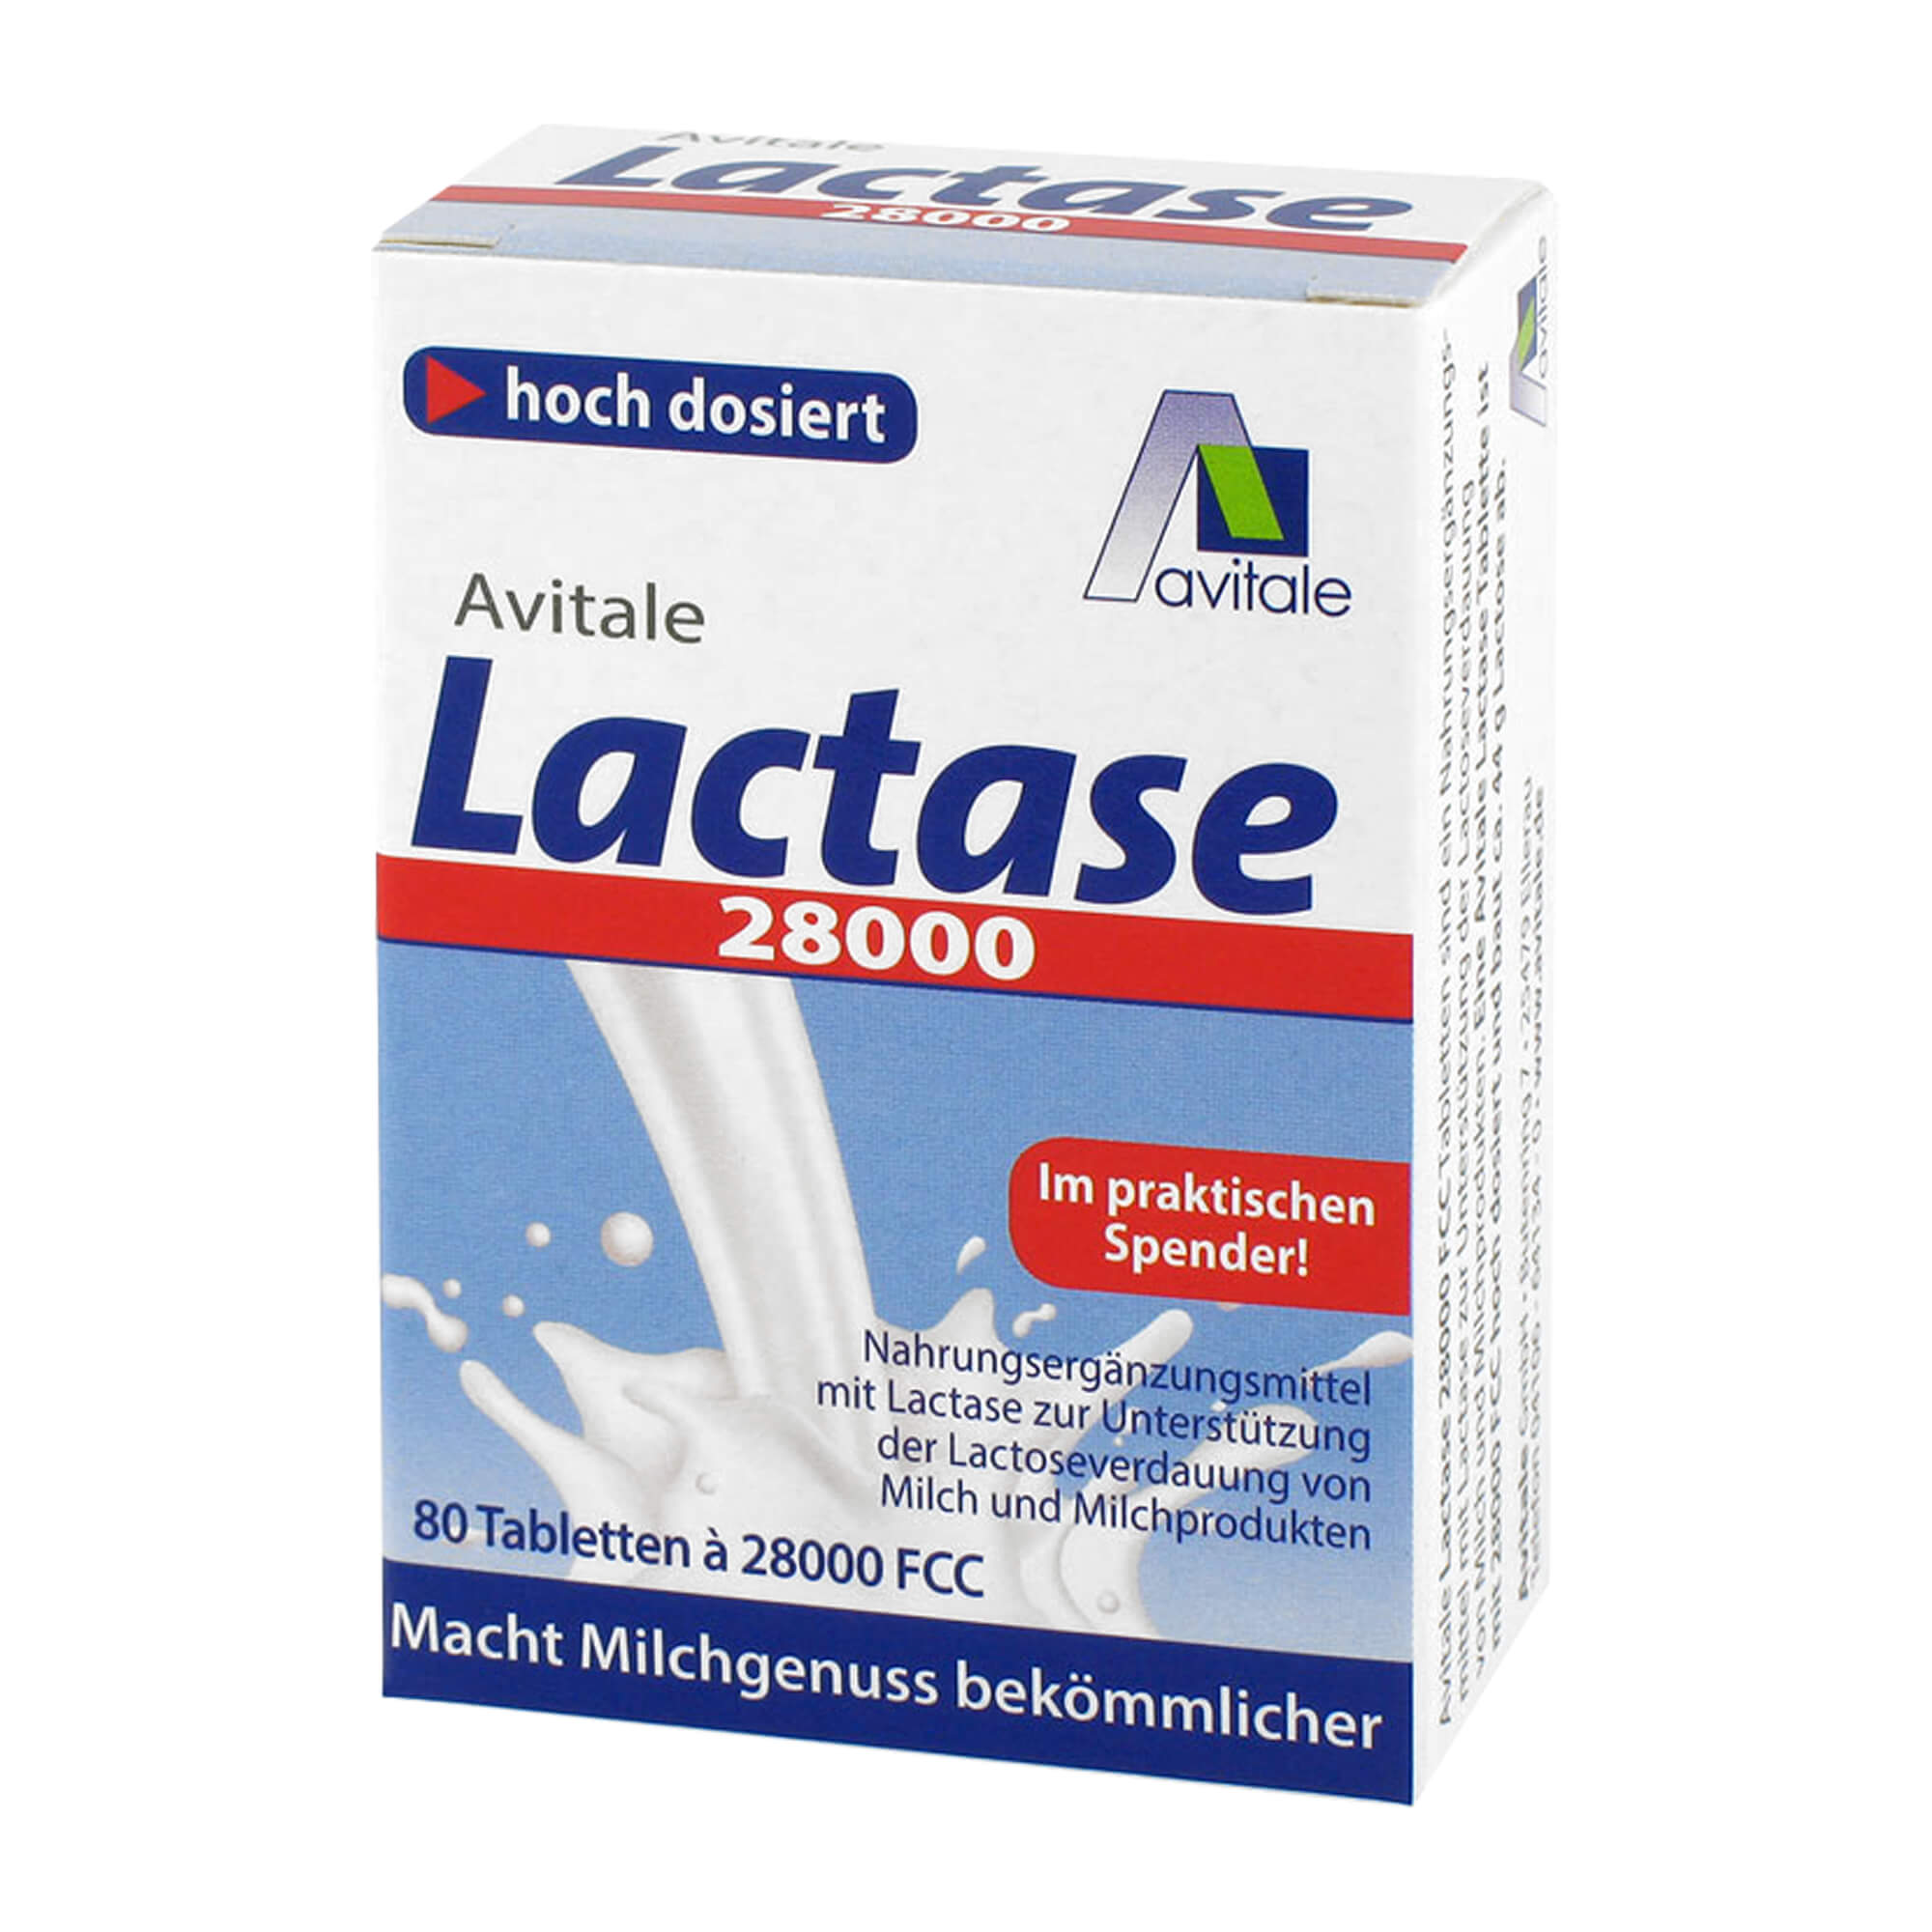 Nahrungsergänzungsmittel mit Lactase zur Unterstützung der Lactoseverdauung von Milch und Milchprodukten.